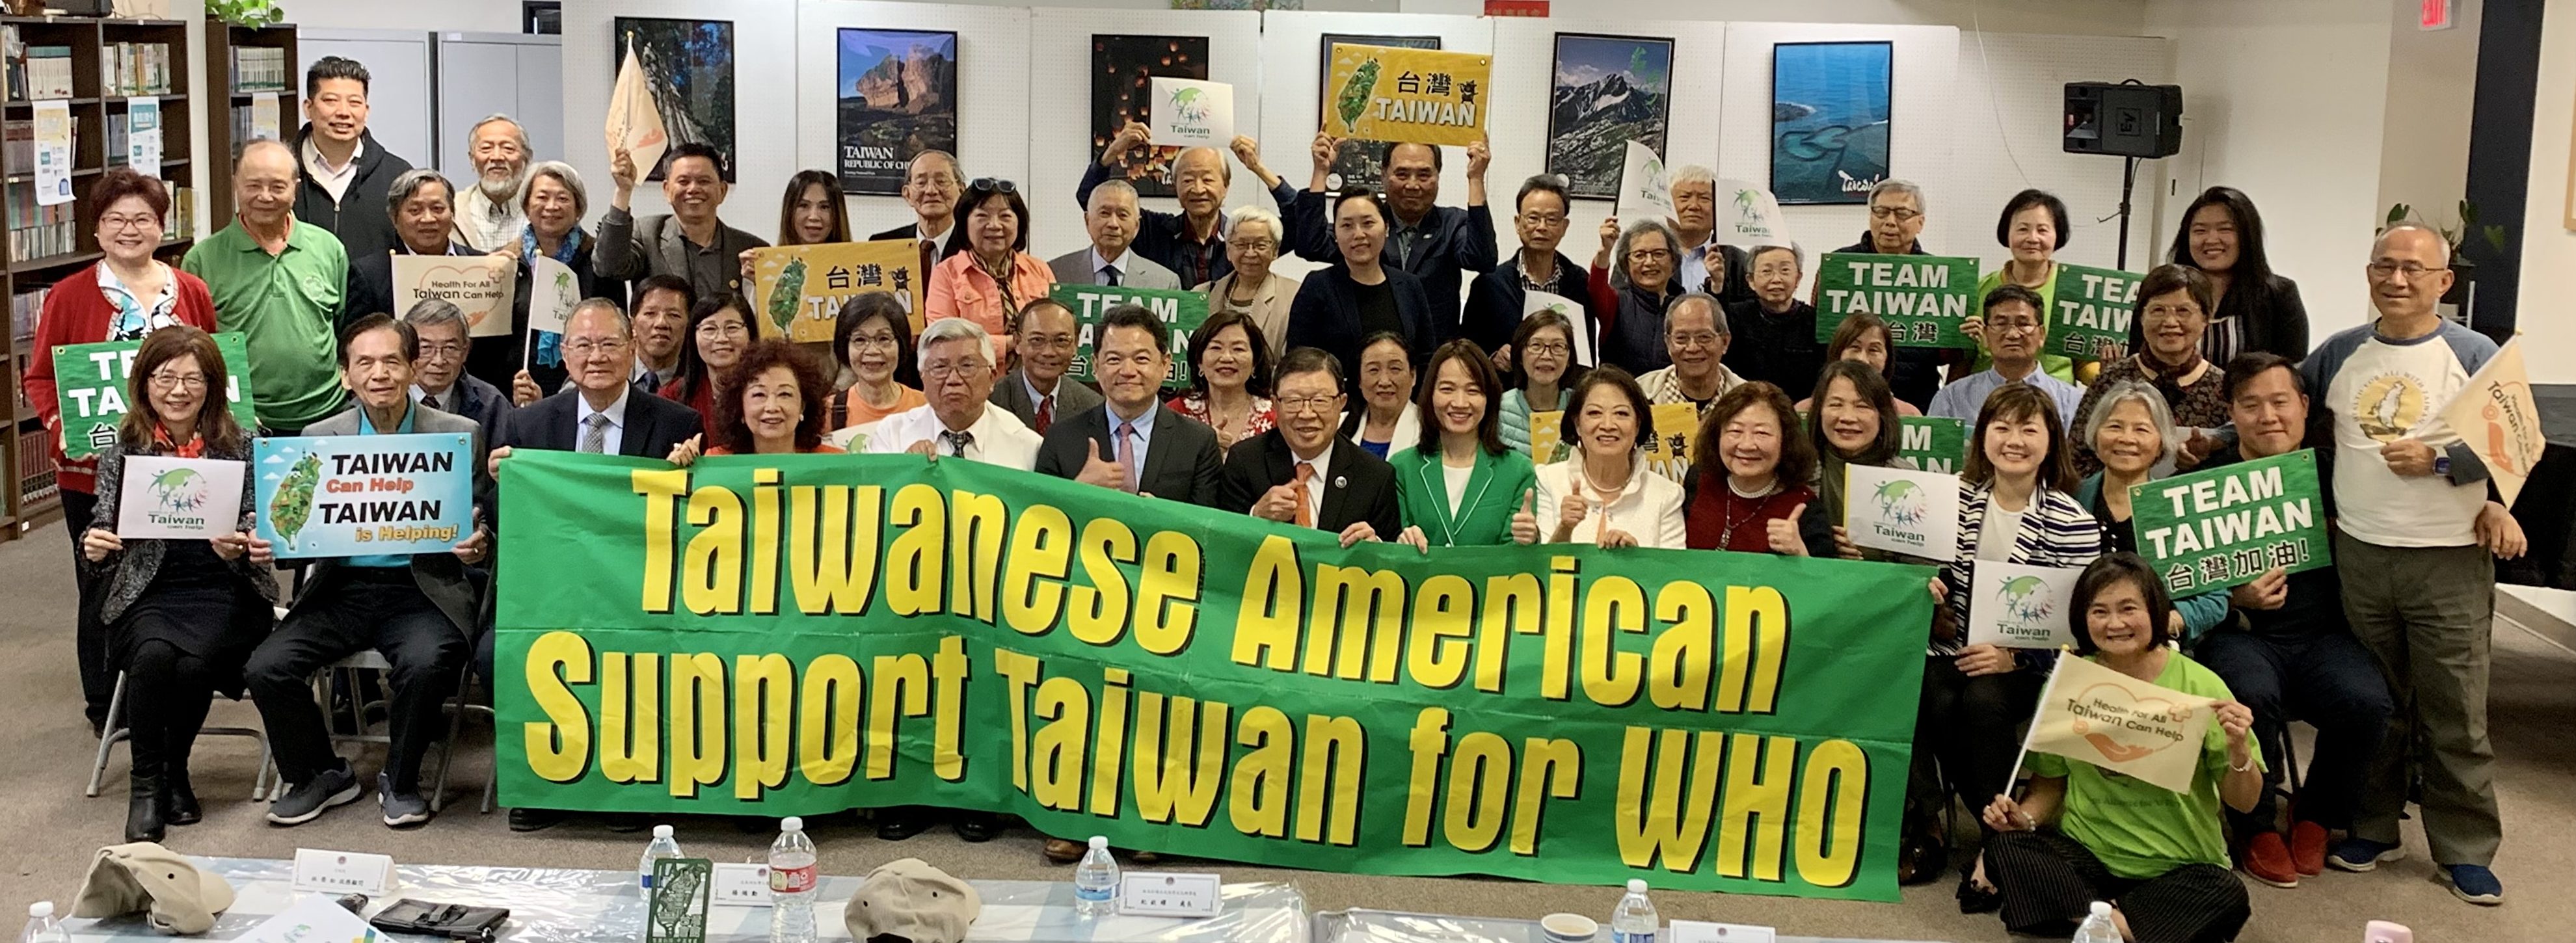 橙县、圣地牙哥侨界强烈声援台湾加入世卫组织